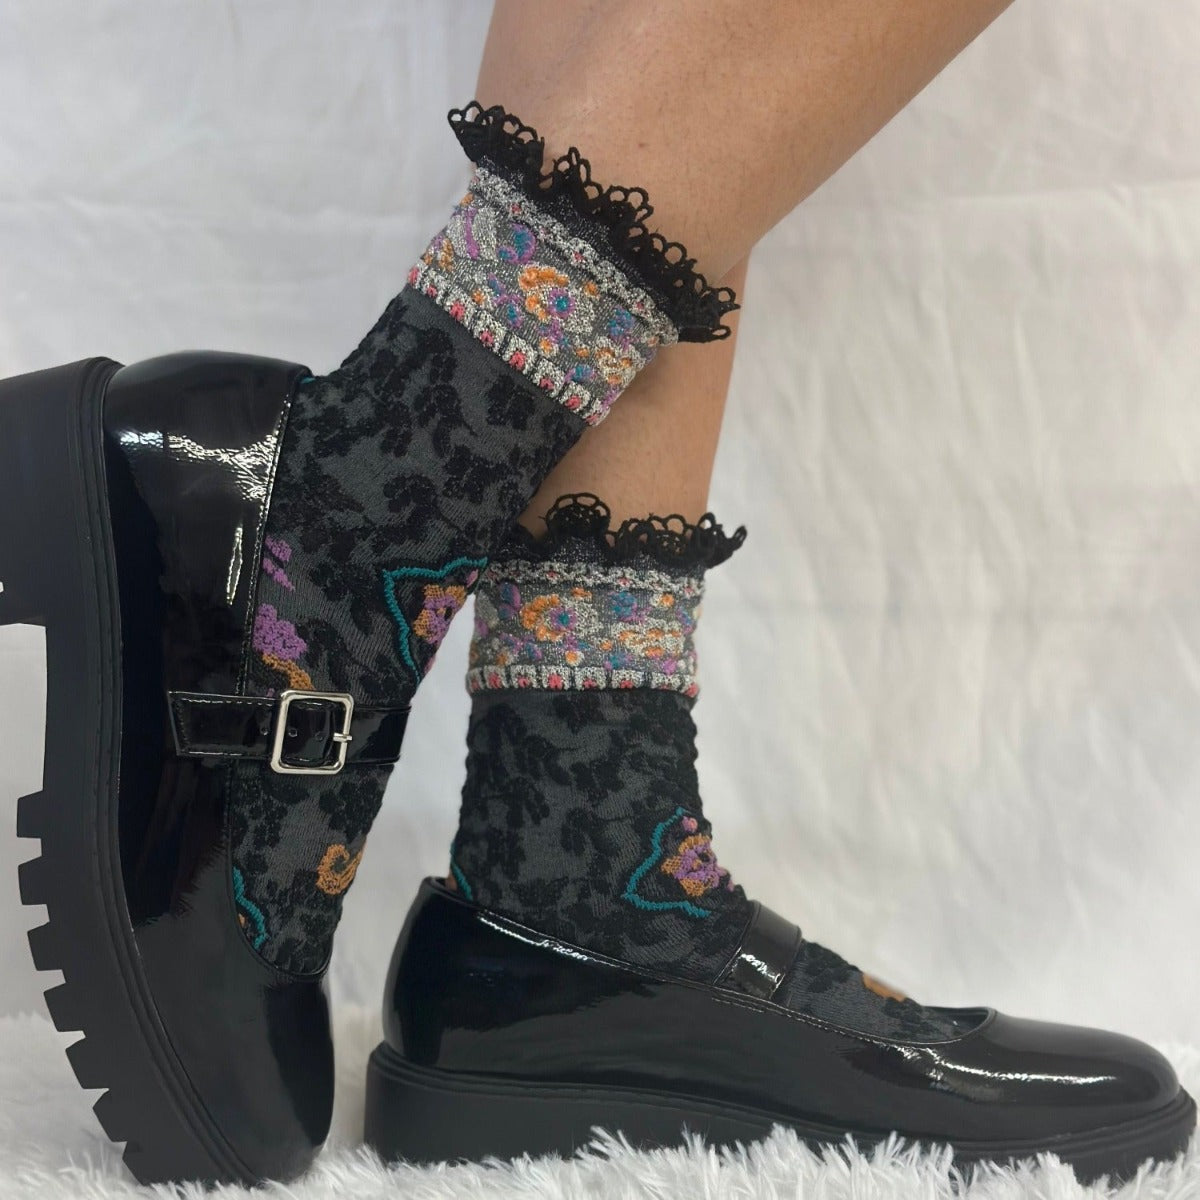 HELLO BIRDY knit lace top black crew sock - eye candy sock, novelty print sock women's fun colorful socks women